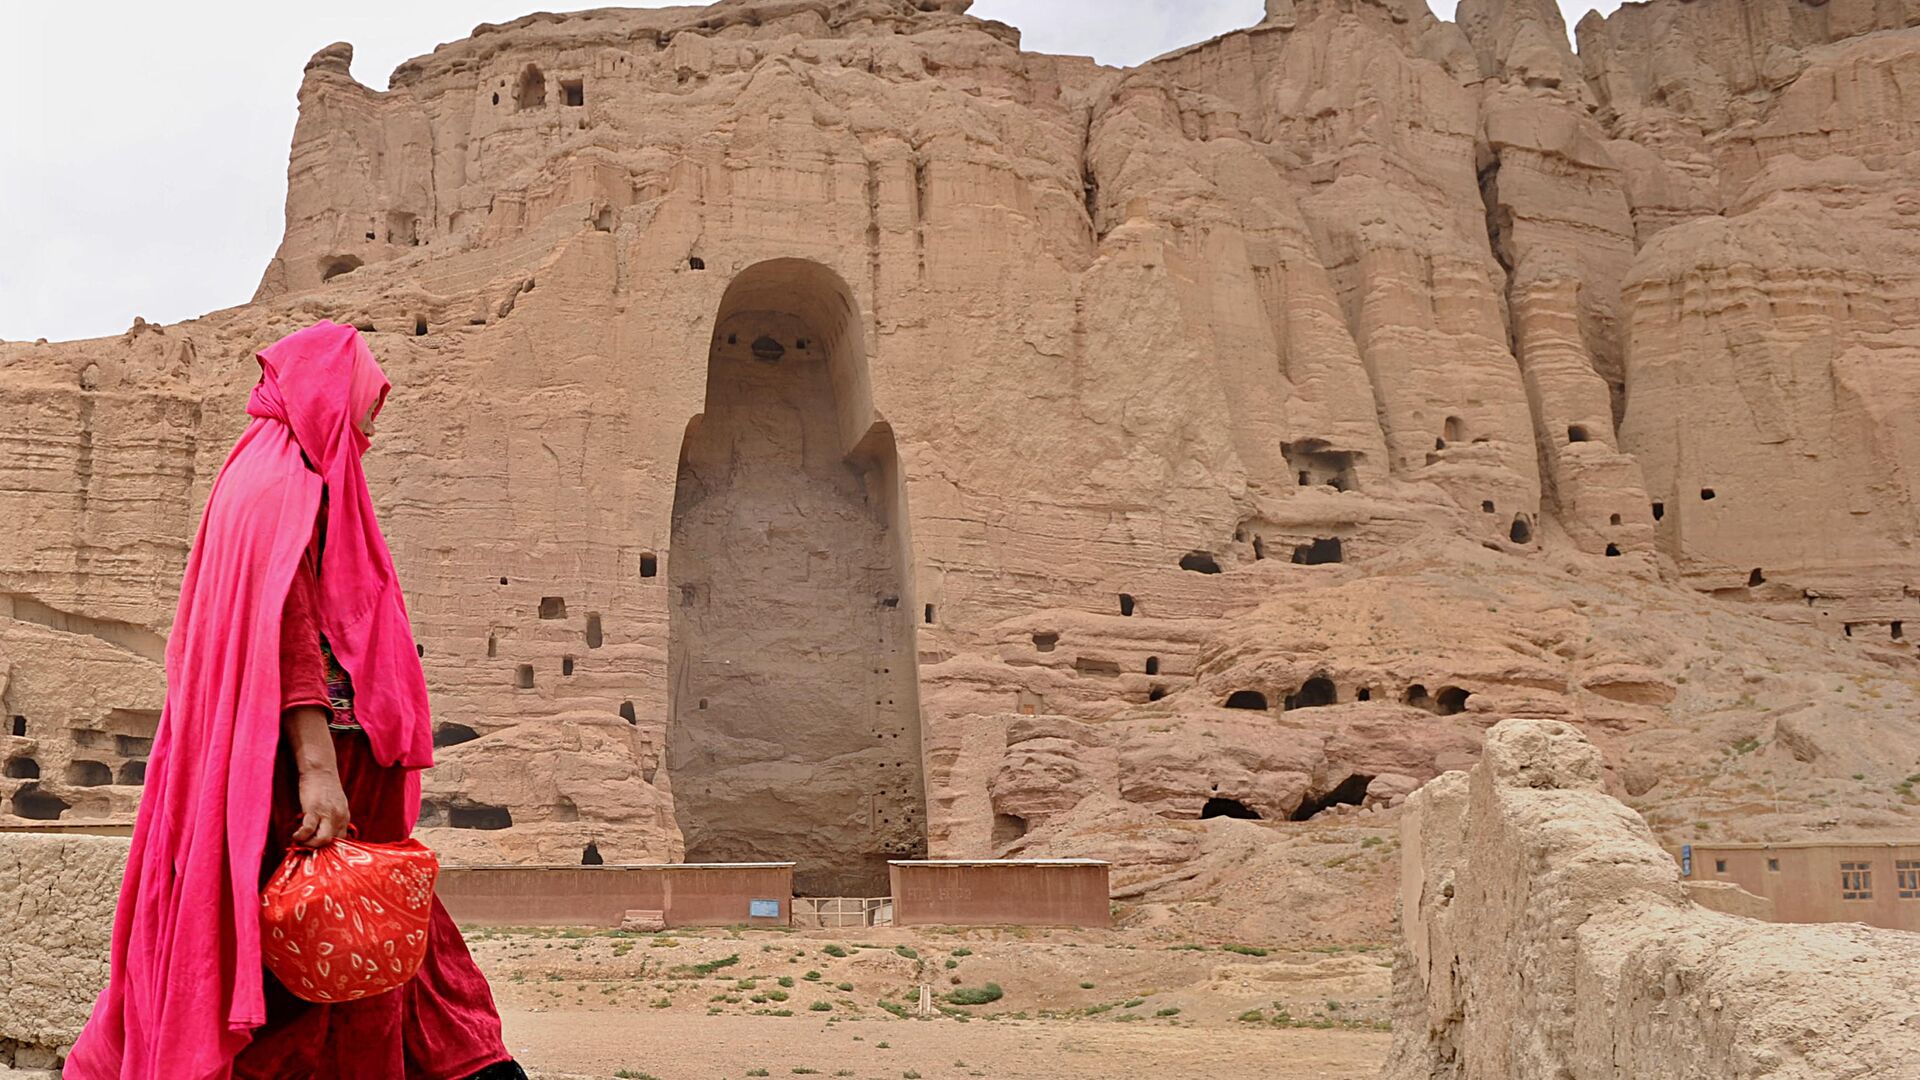 Женщина проходит мимо скал в Бамианской долине, где были высечены статуи. 2010 год - РИА Новости, 1920, 07.05.2019